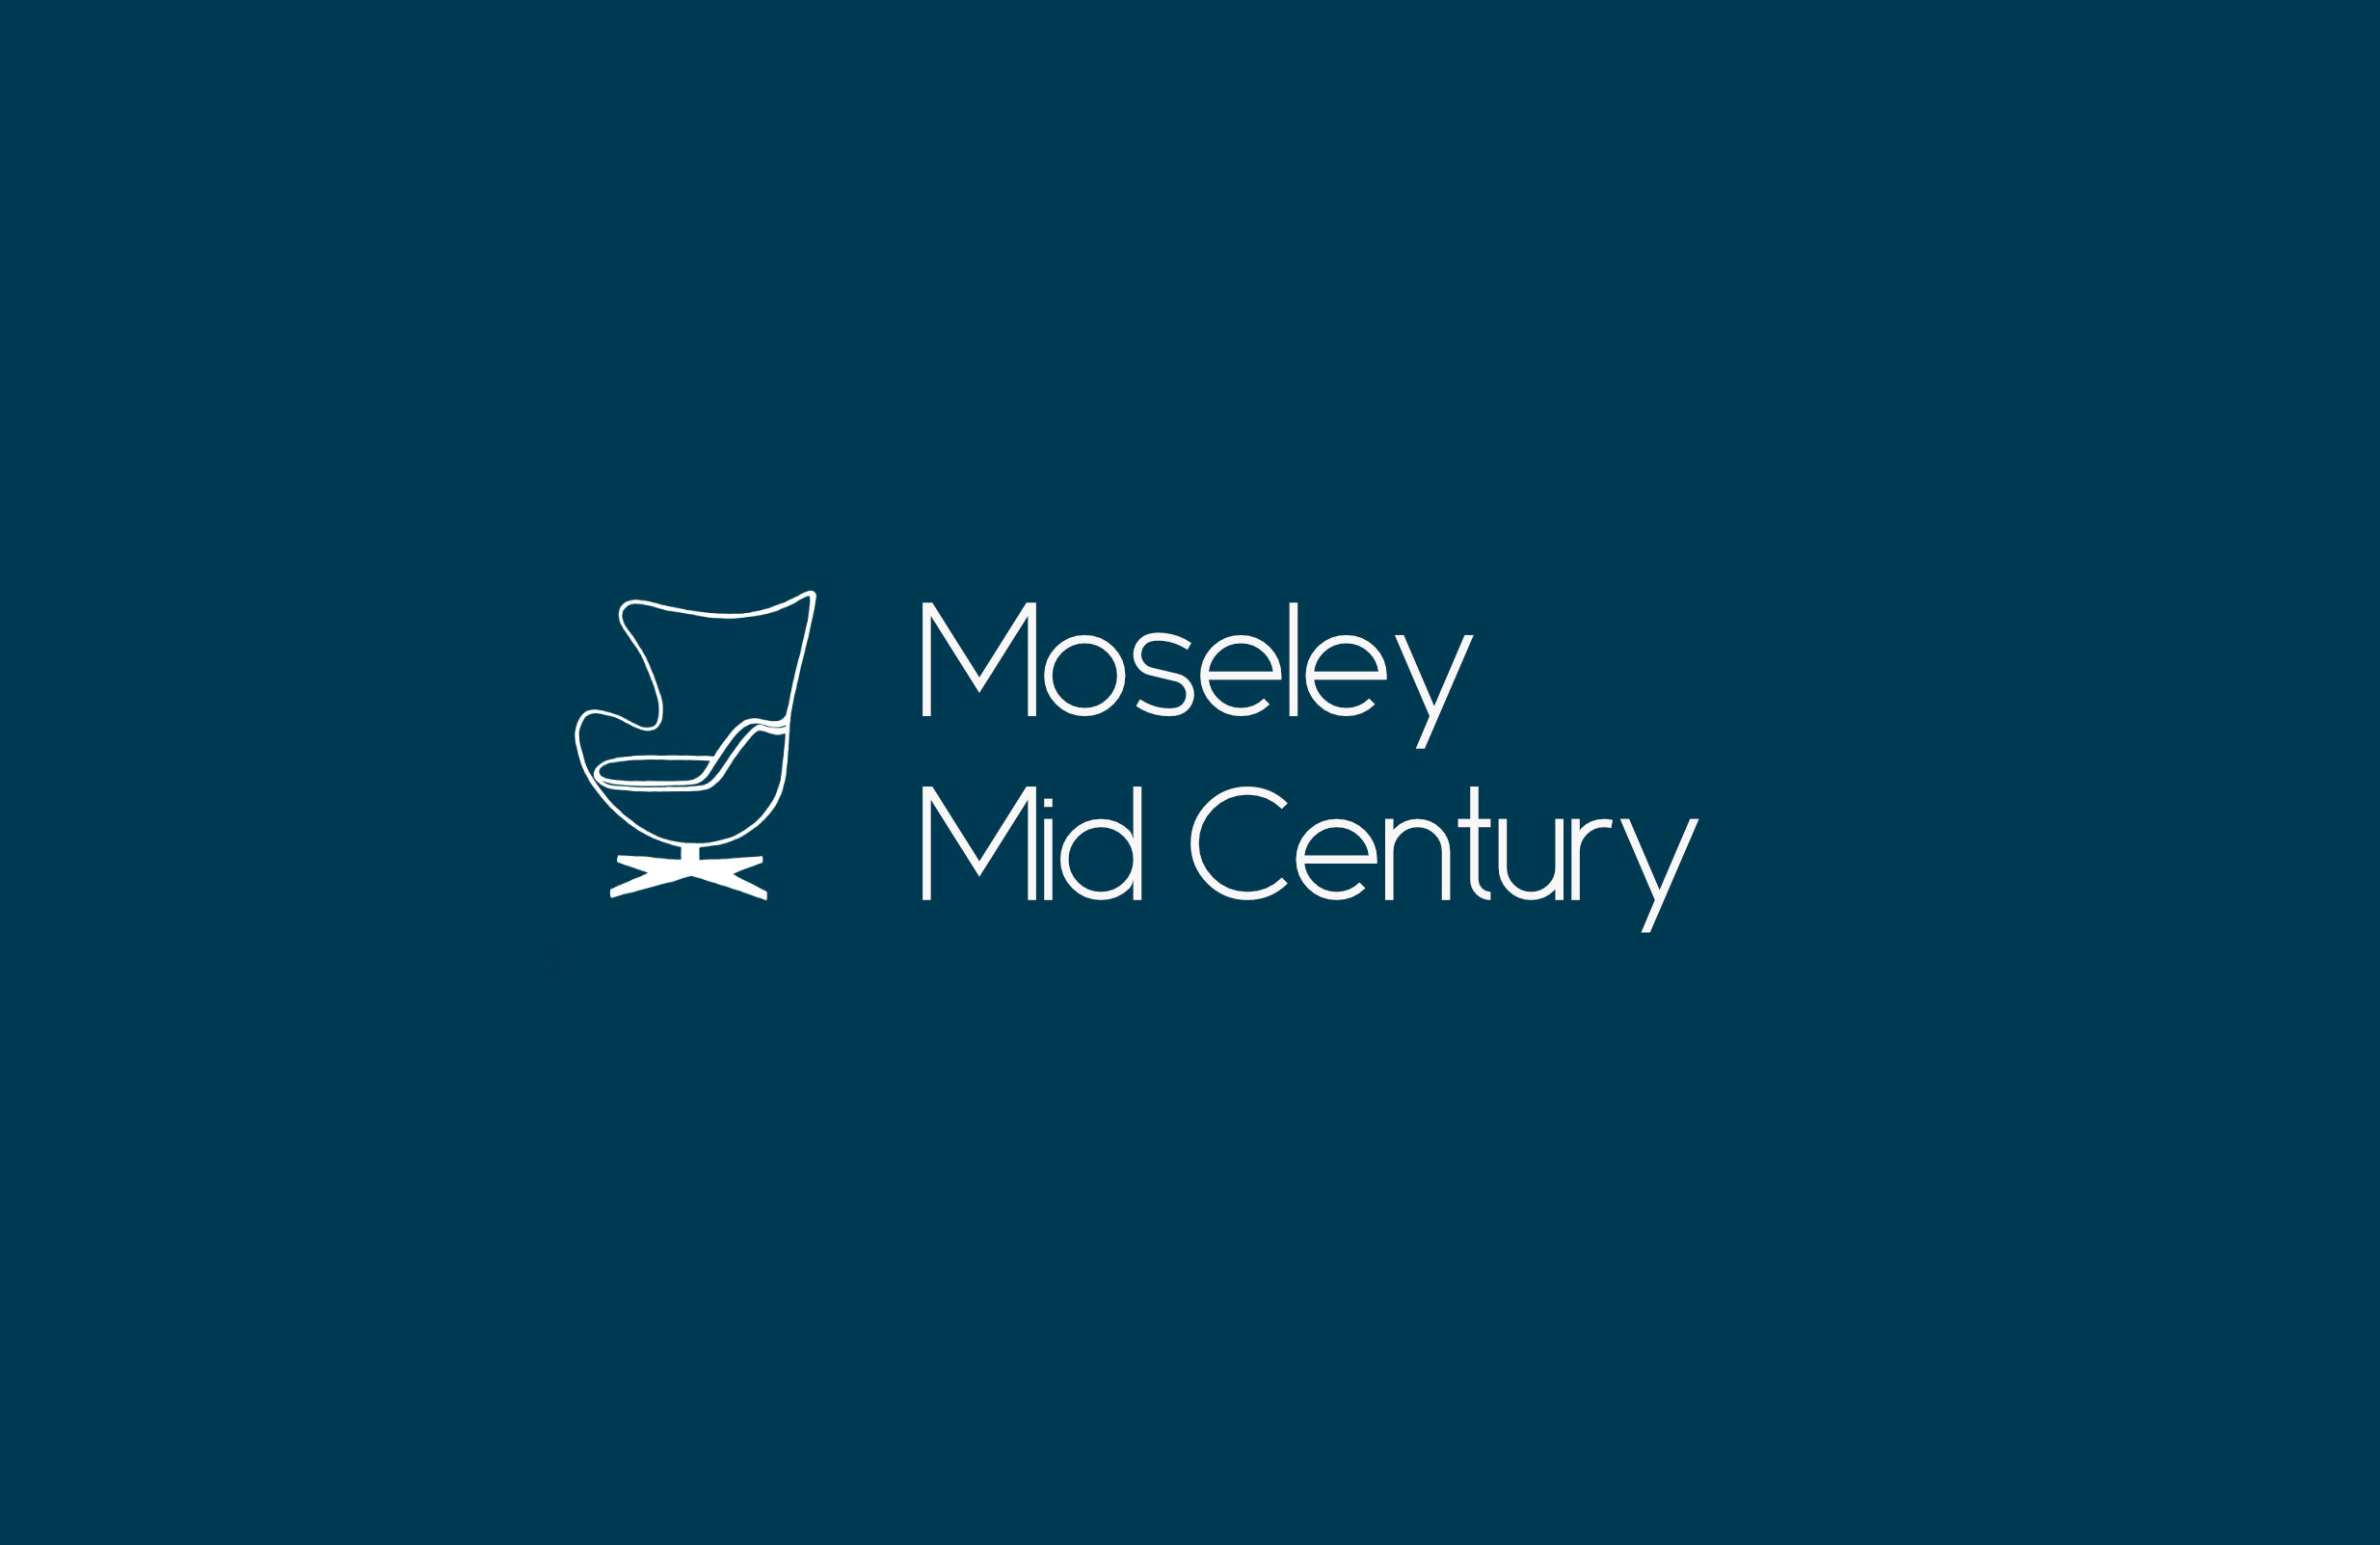 MMC logo 2021 7.jpg